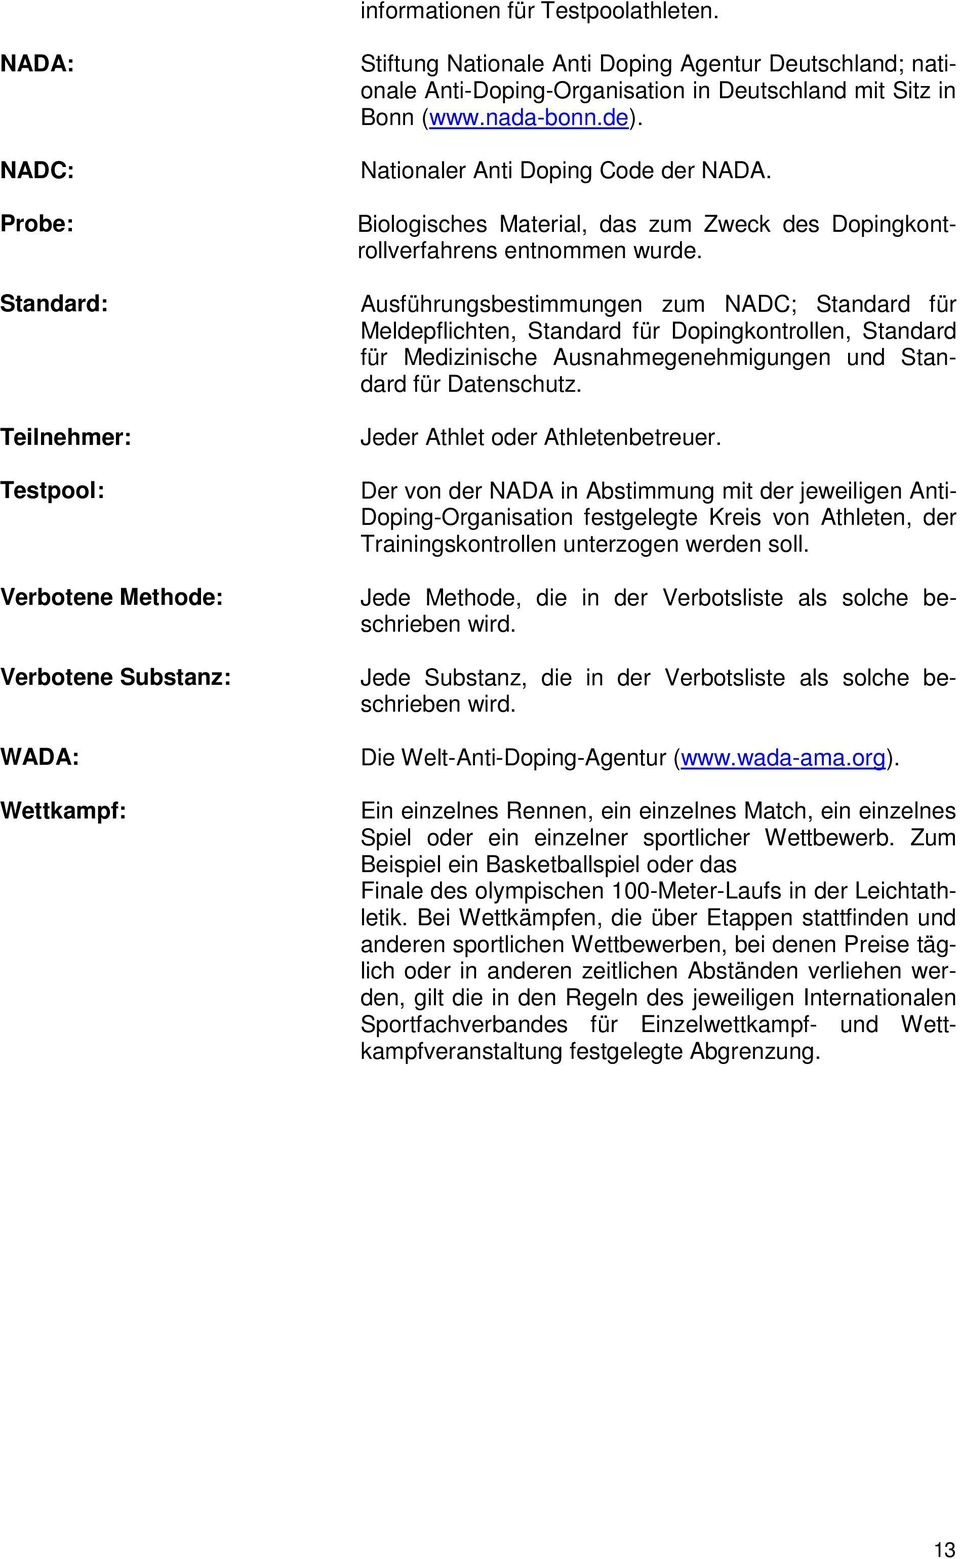 Deutschland mit Sitz in Bonn (www.nada-bonn.de). Nationaler Anti Doping Code der NADA. Biologisches Material, das zum Zweck des Dopingkontrollverfahrens entnommen wurde.